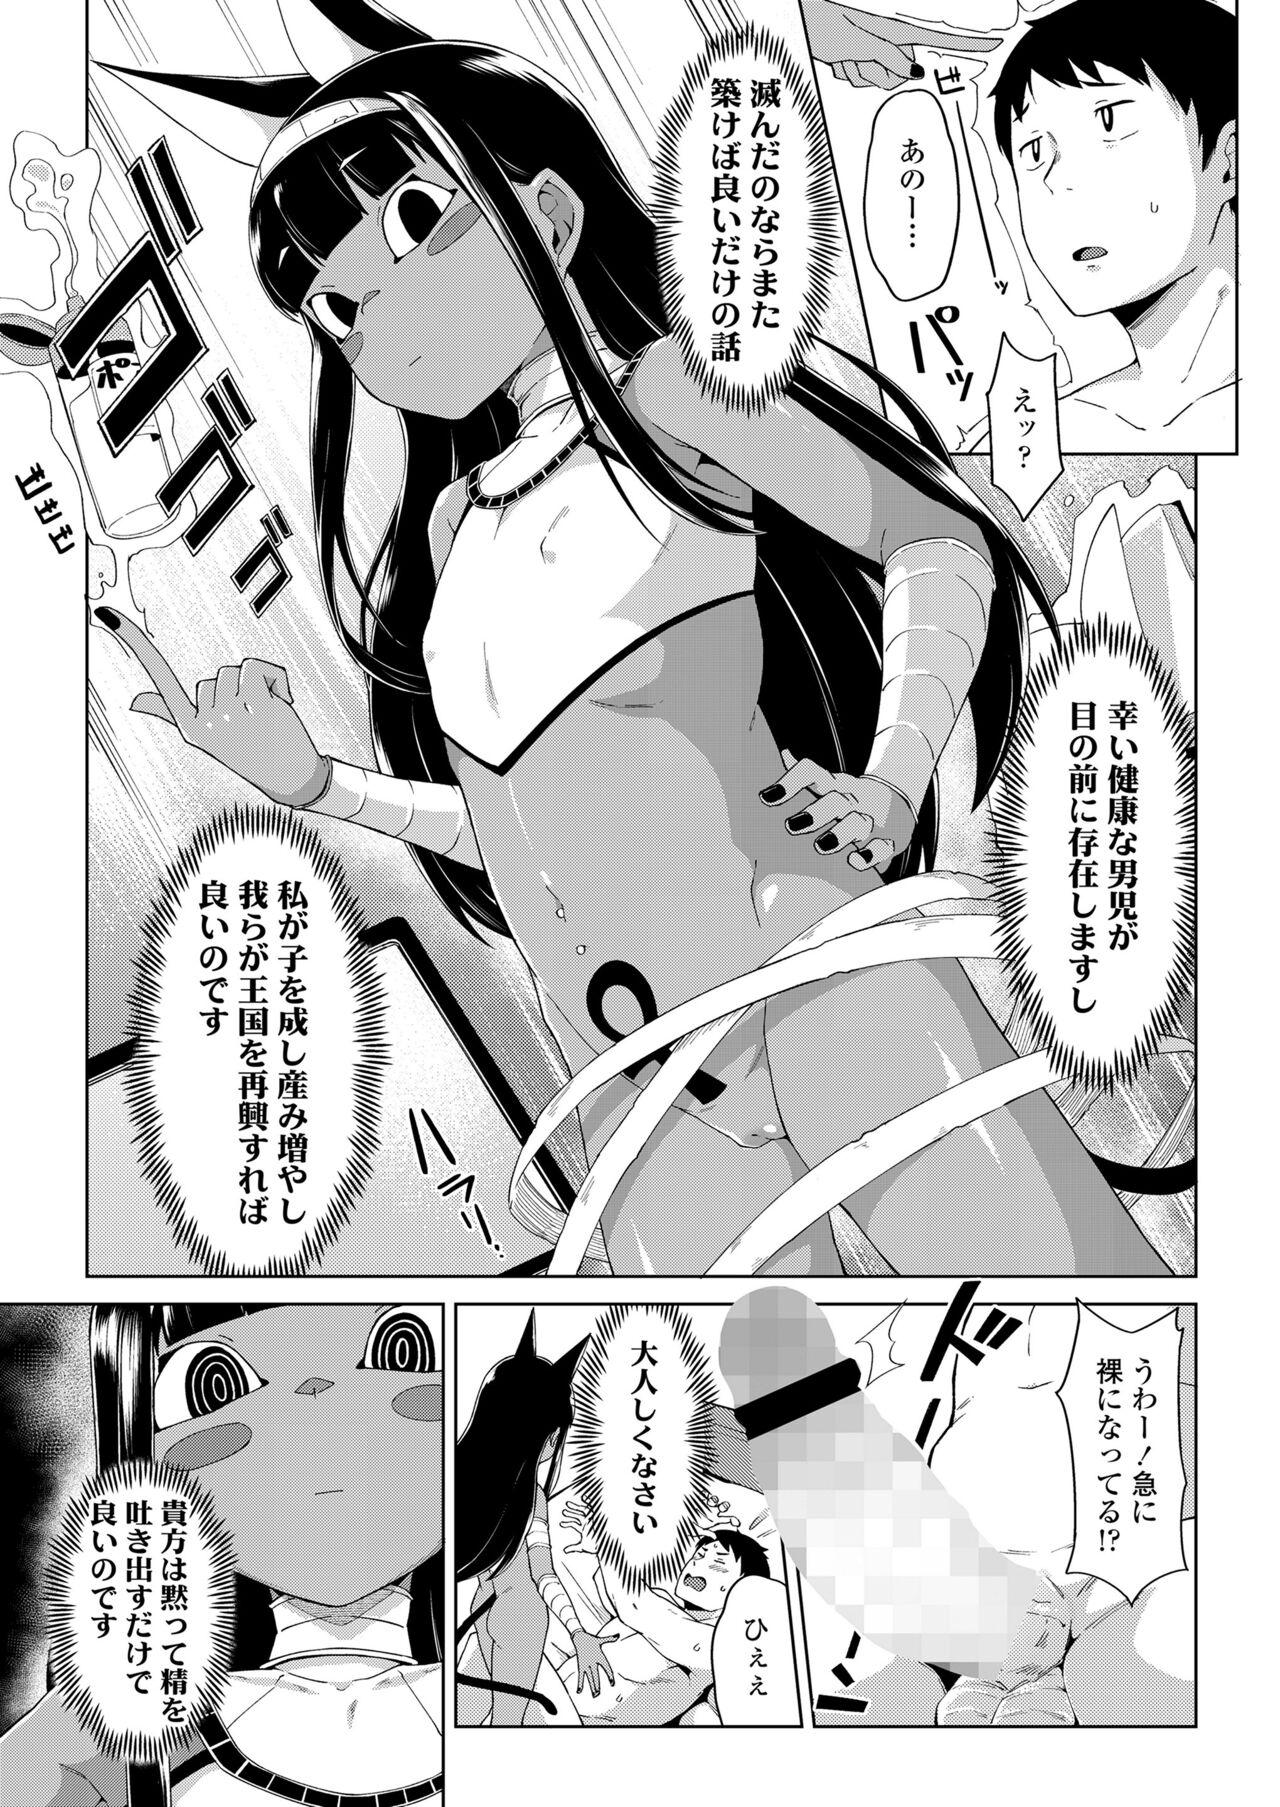 Leaked Towako Oboro Emaki 13 Culos - Page 7